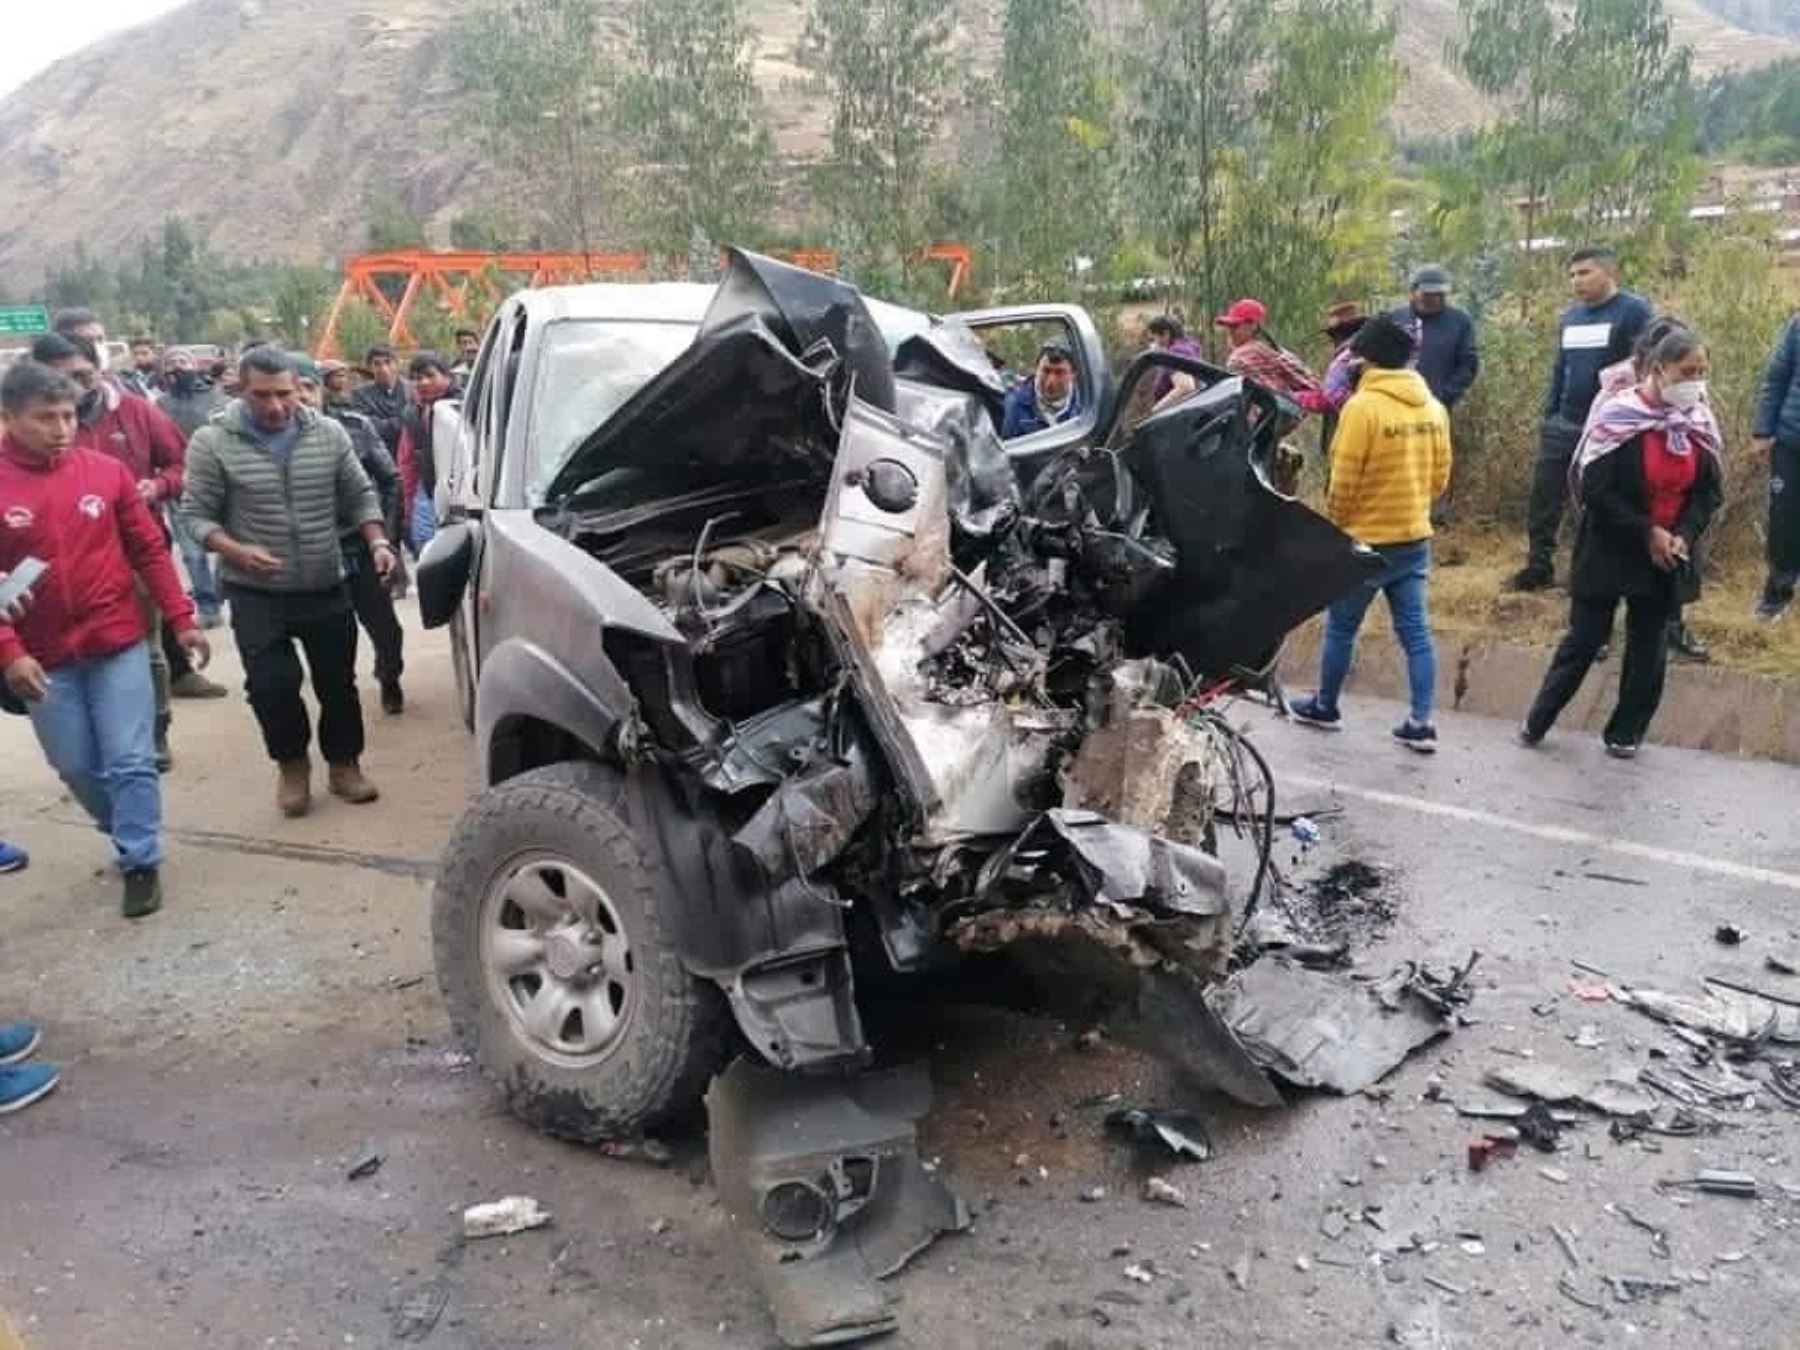 Cuatro religiosos mueren y 15 turistas resultan heridos en accidente de tránsito ocurrido ayer en la carretera Cusco-Sicuani, región Cusco. Fotos. Cusco en Portada/Facebook